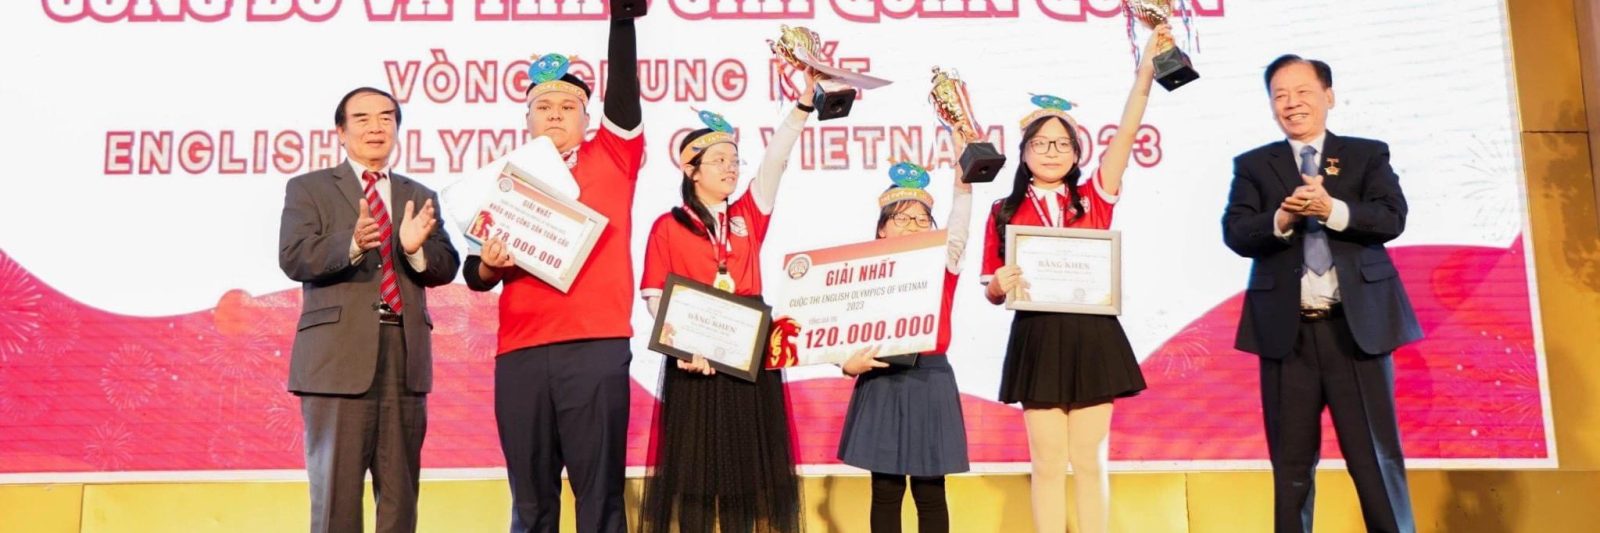 Nguyễn Minh Trang - Lớp 4A1 cùng đồng đội giành giải Quán Quân tại vòng Chung kết English Olympics of Vietnam